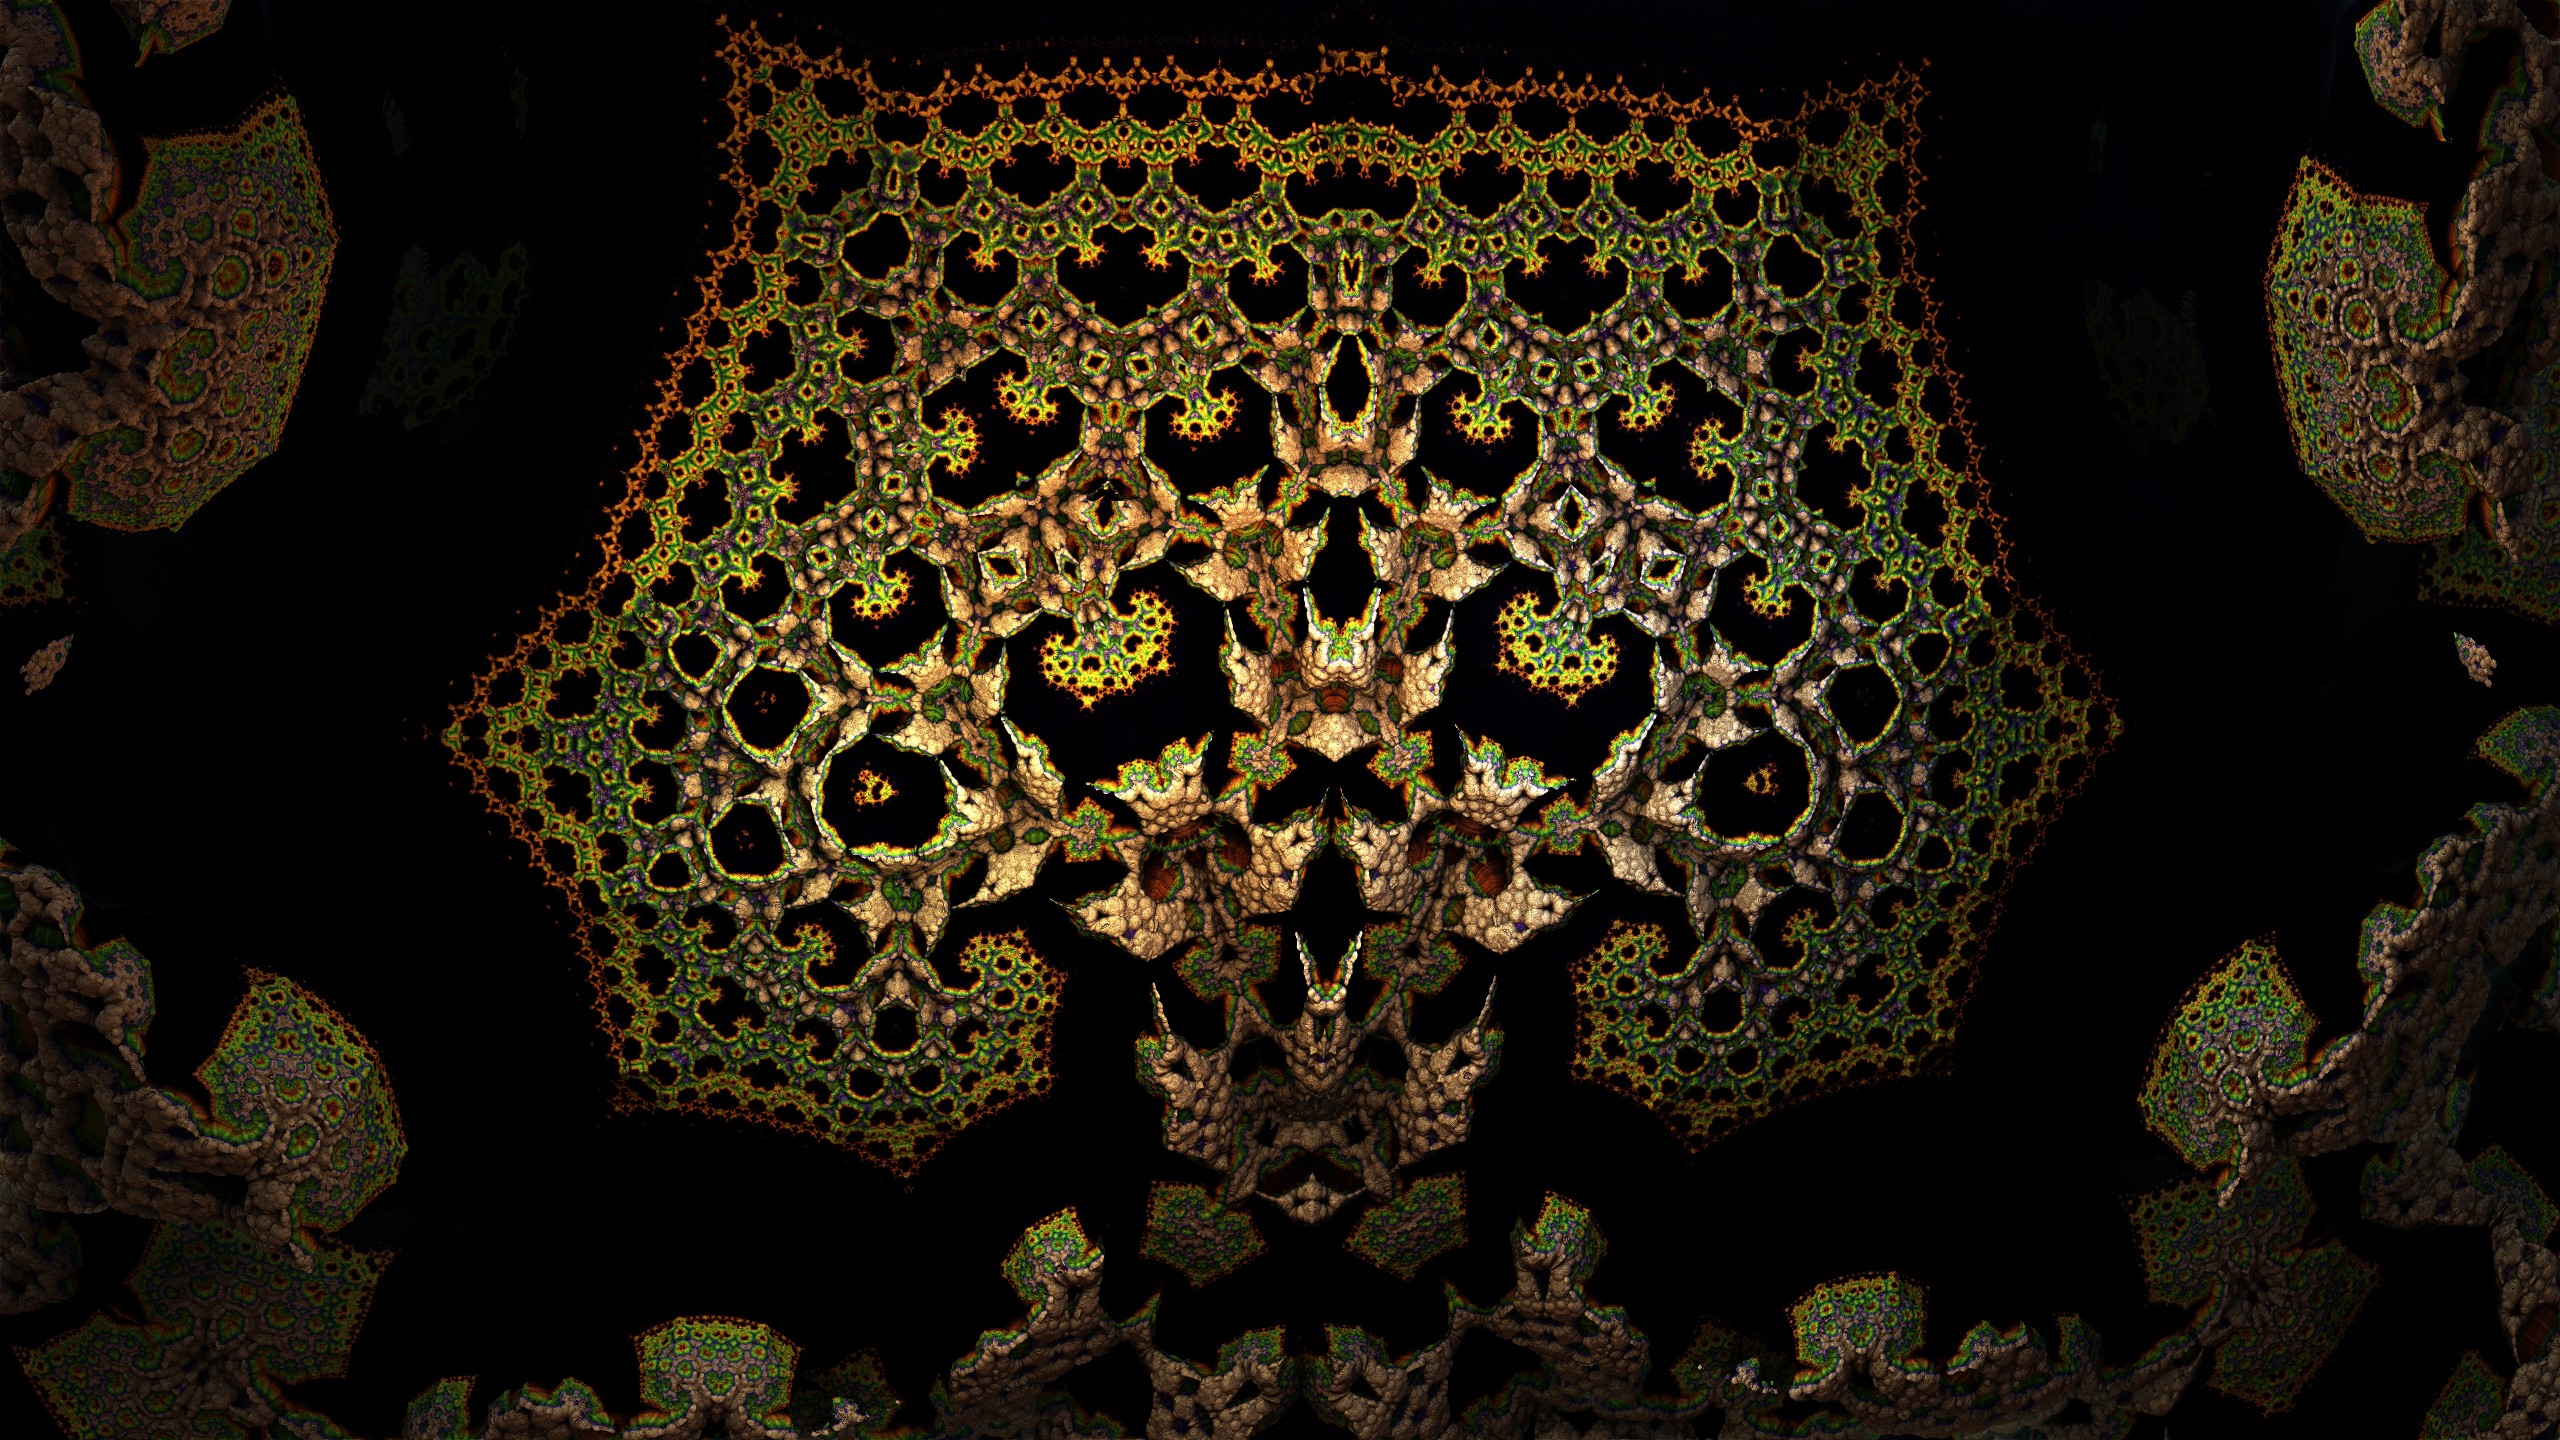 Fractal Tree - Mandelbulb 3D fractal